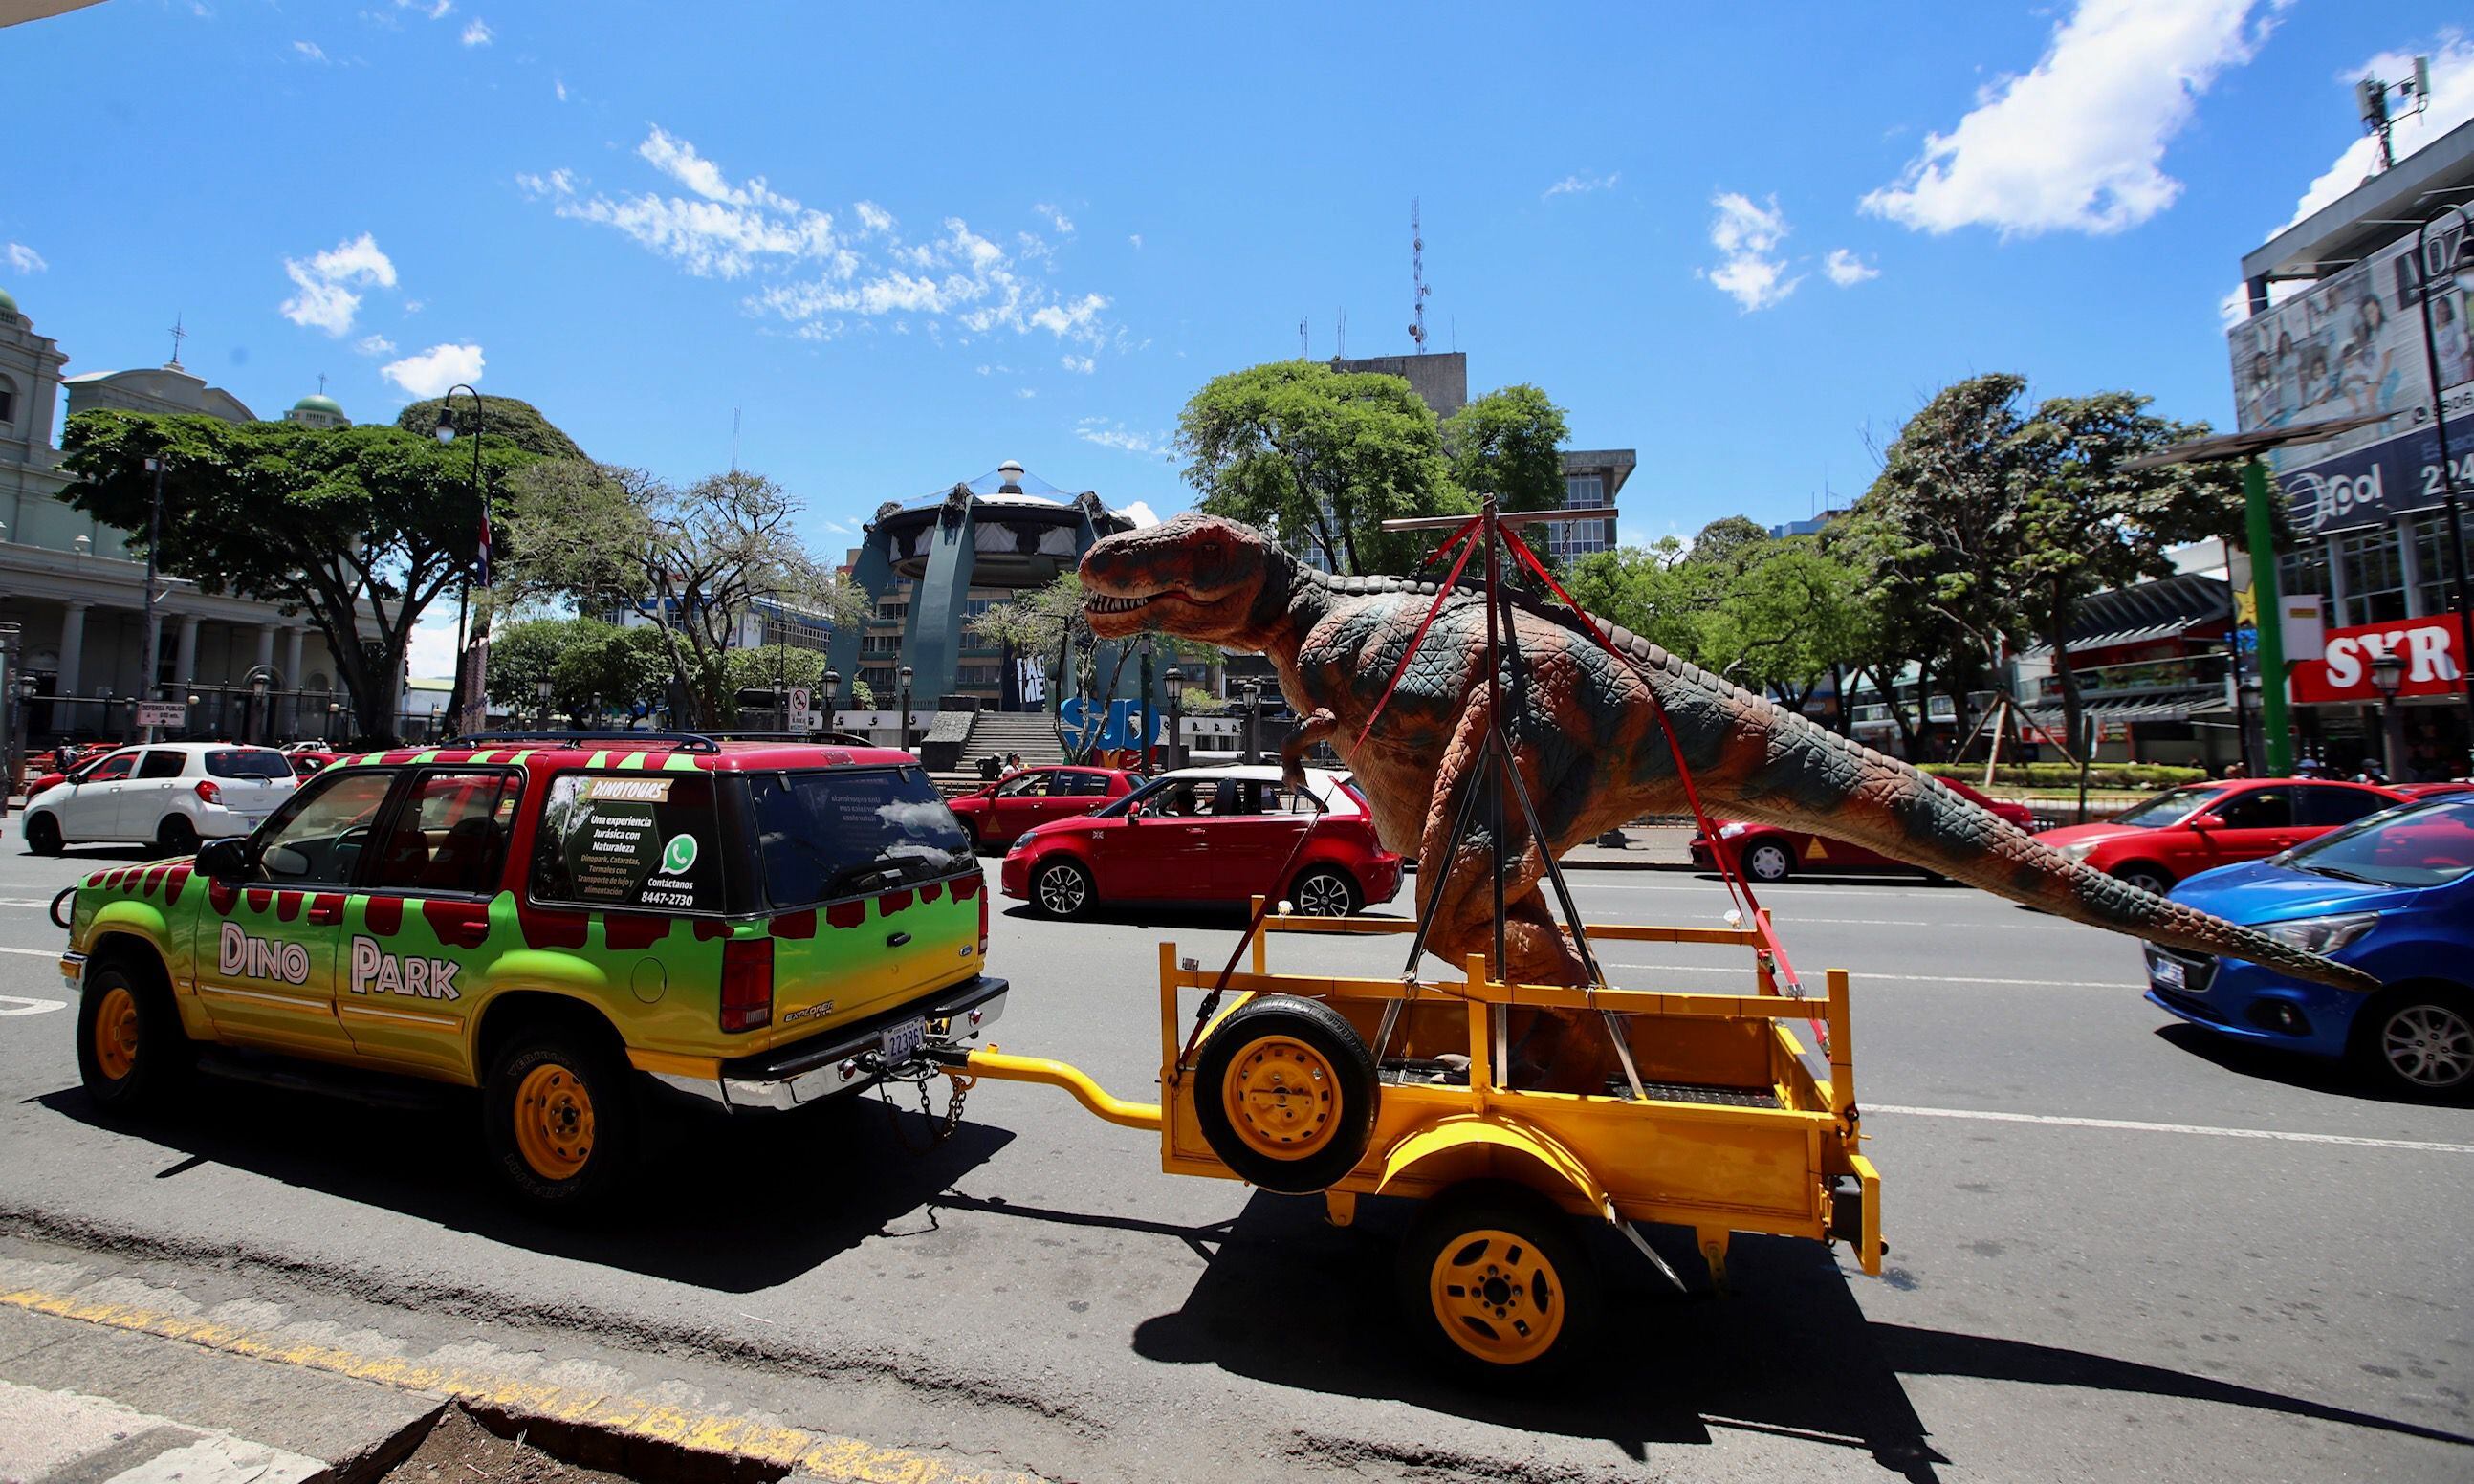 Un dinosaurio se escapó de Dino Park y anda de paseo en San José | La Teja